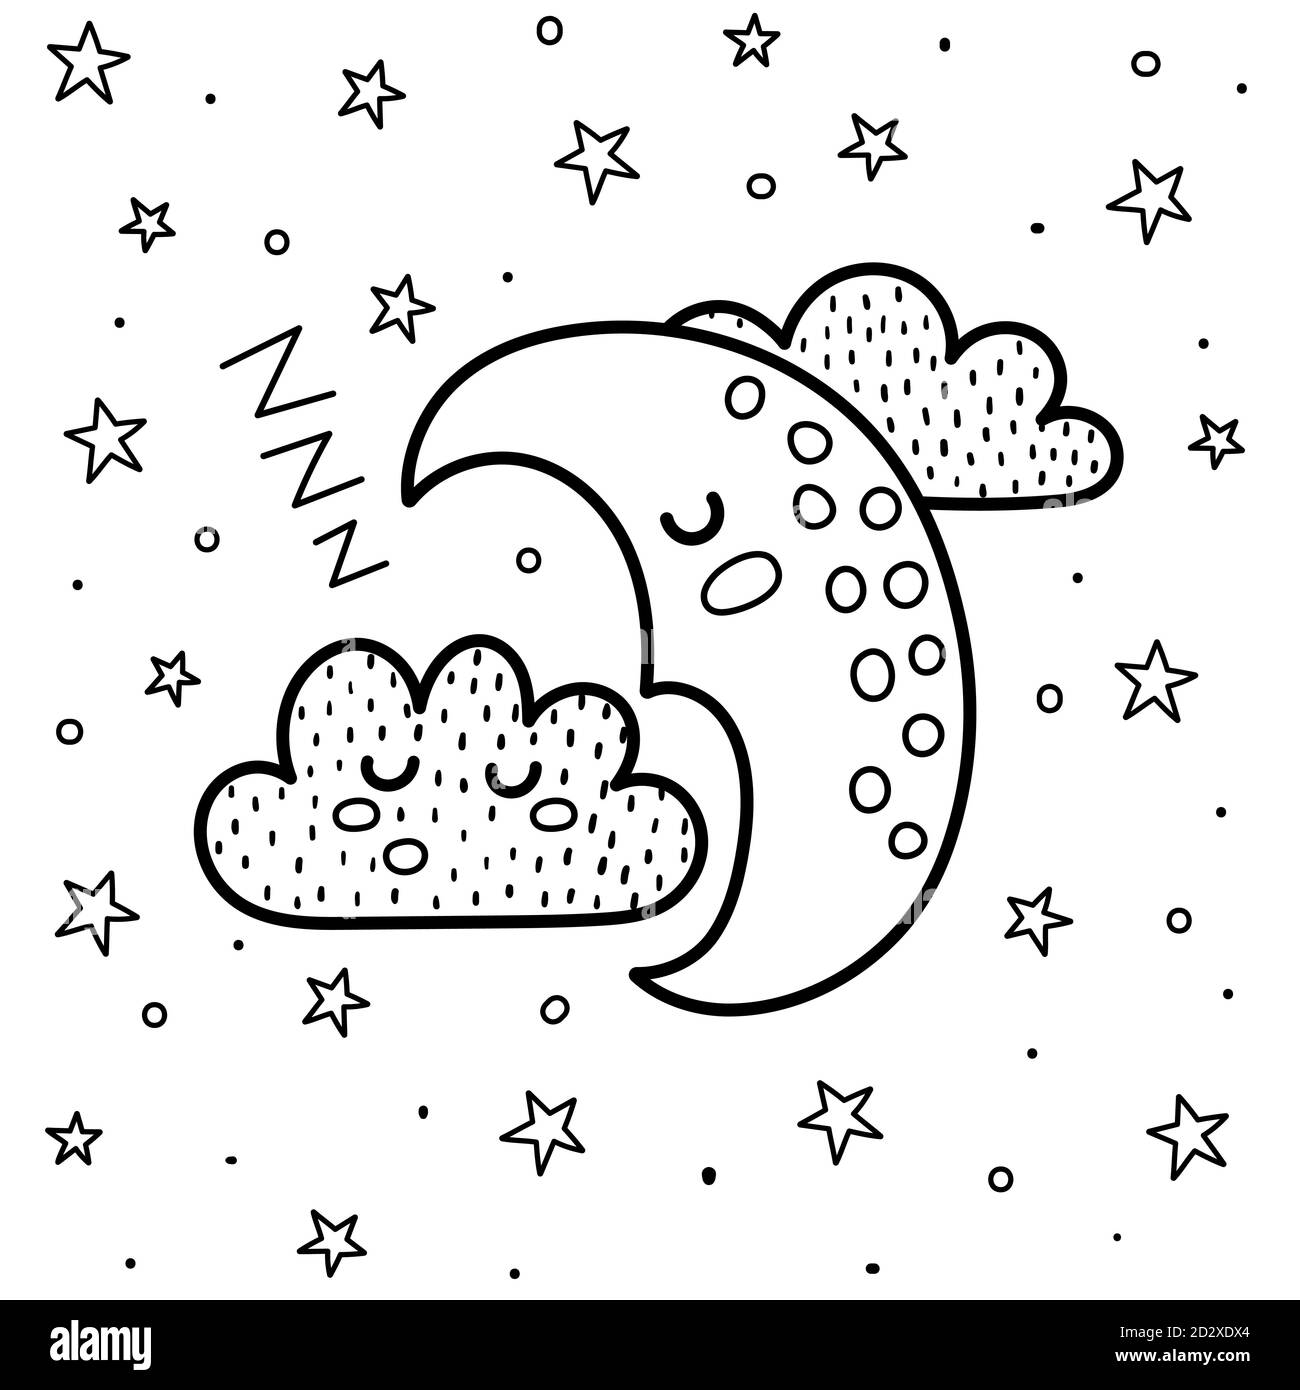 Gute Nacht Malseite mit einem niedlichen schlafenden Mond und Wolke. Schwarz-Weiß-Fantasy-Hintergrund Stock Vektor